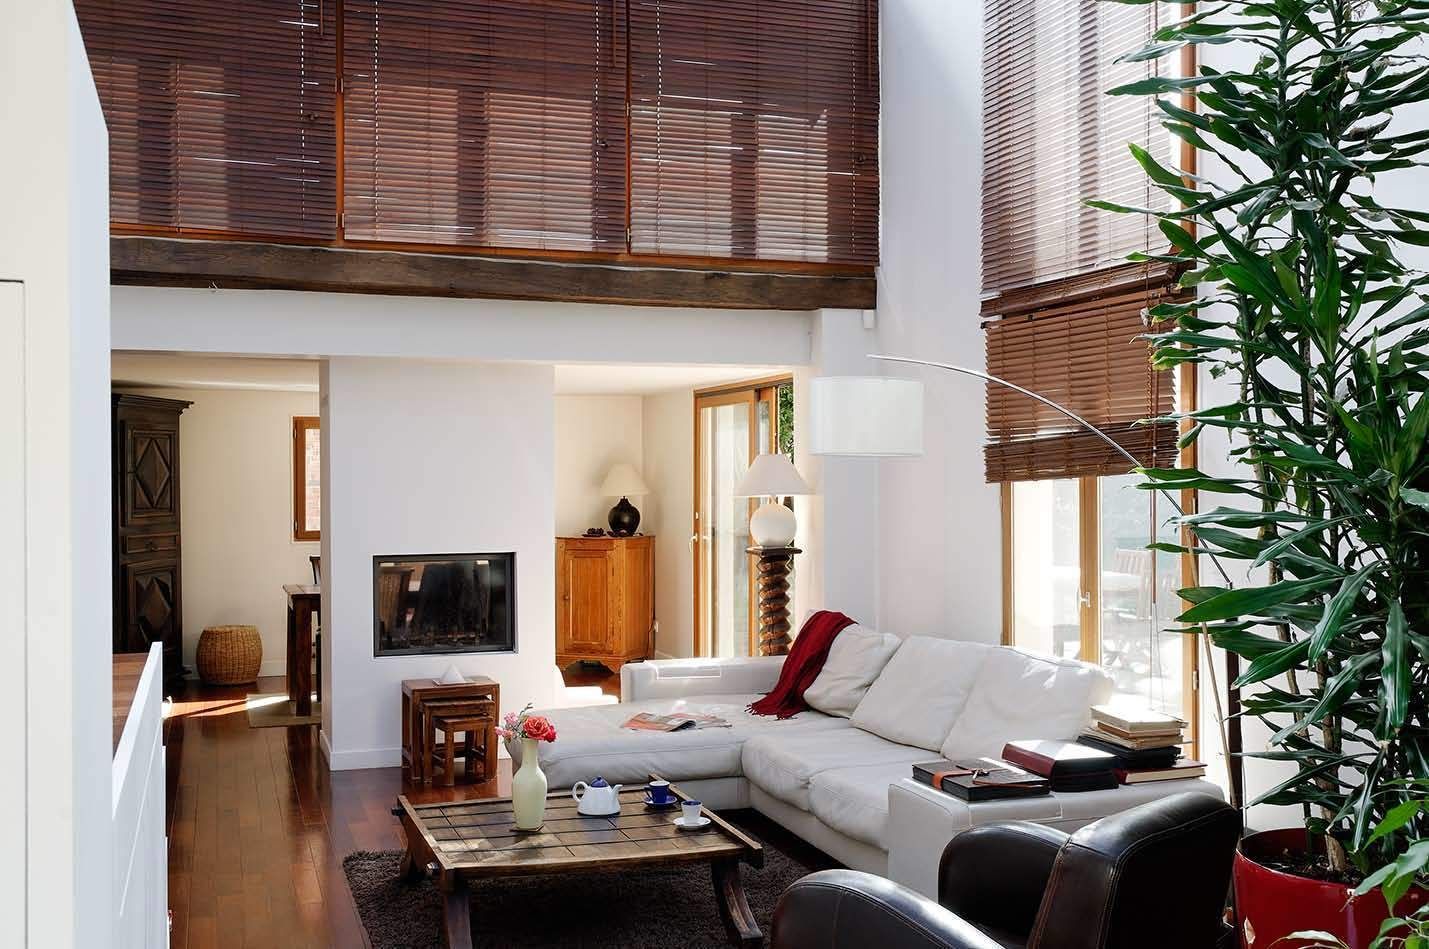 Réfection complète d’une maison à Colombes + extension, 170m² , ATELIER FB ATELIER FB Phòng khách